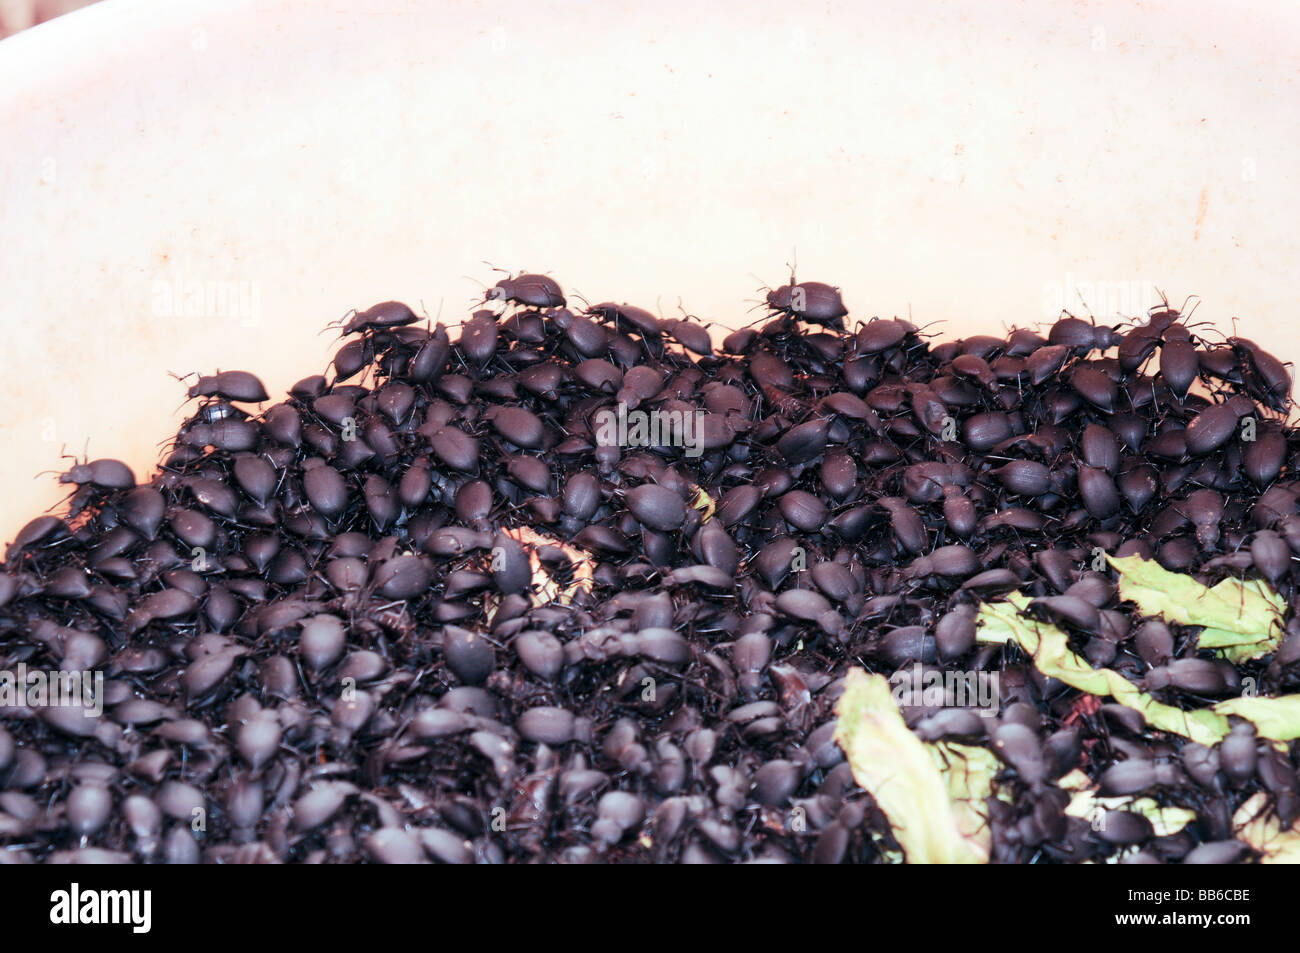 China Yunnan province Kunming food market beetles Stock Photo